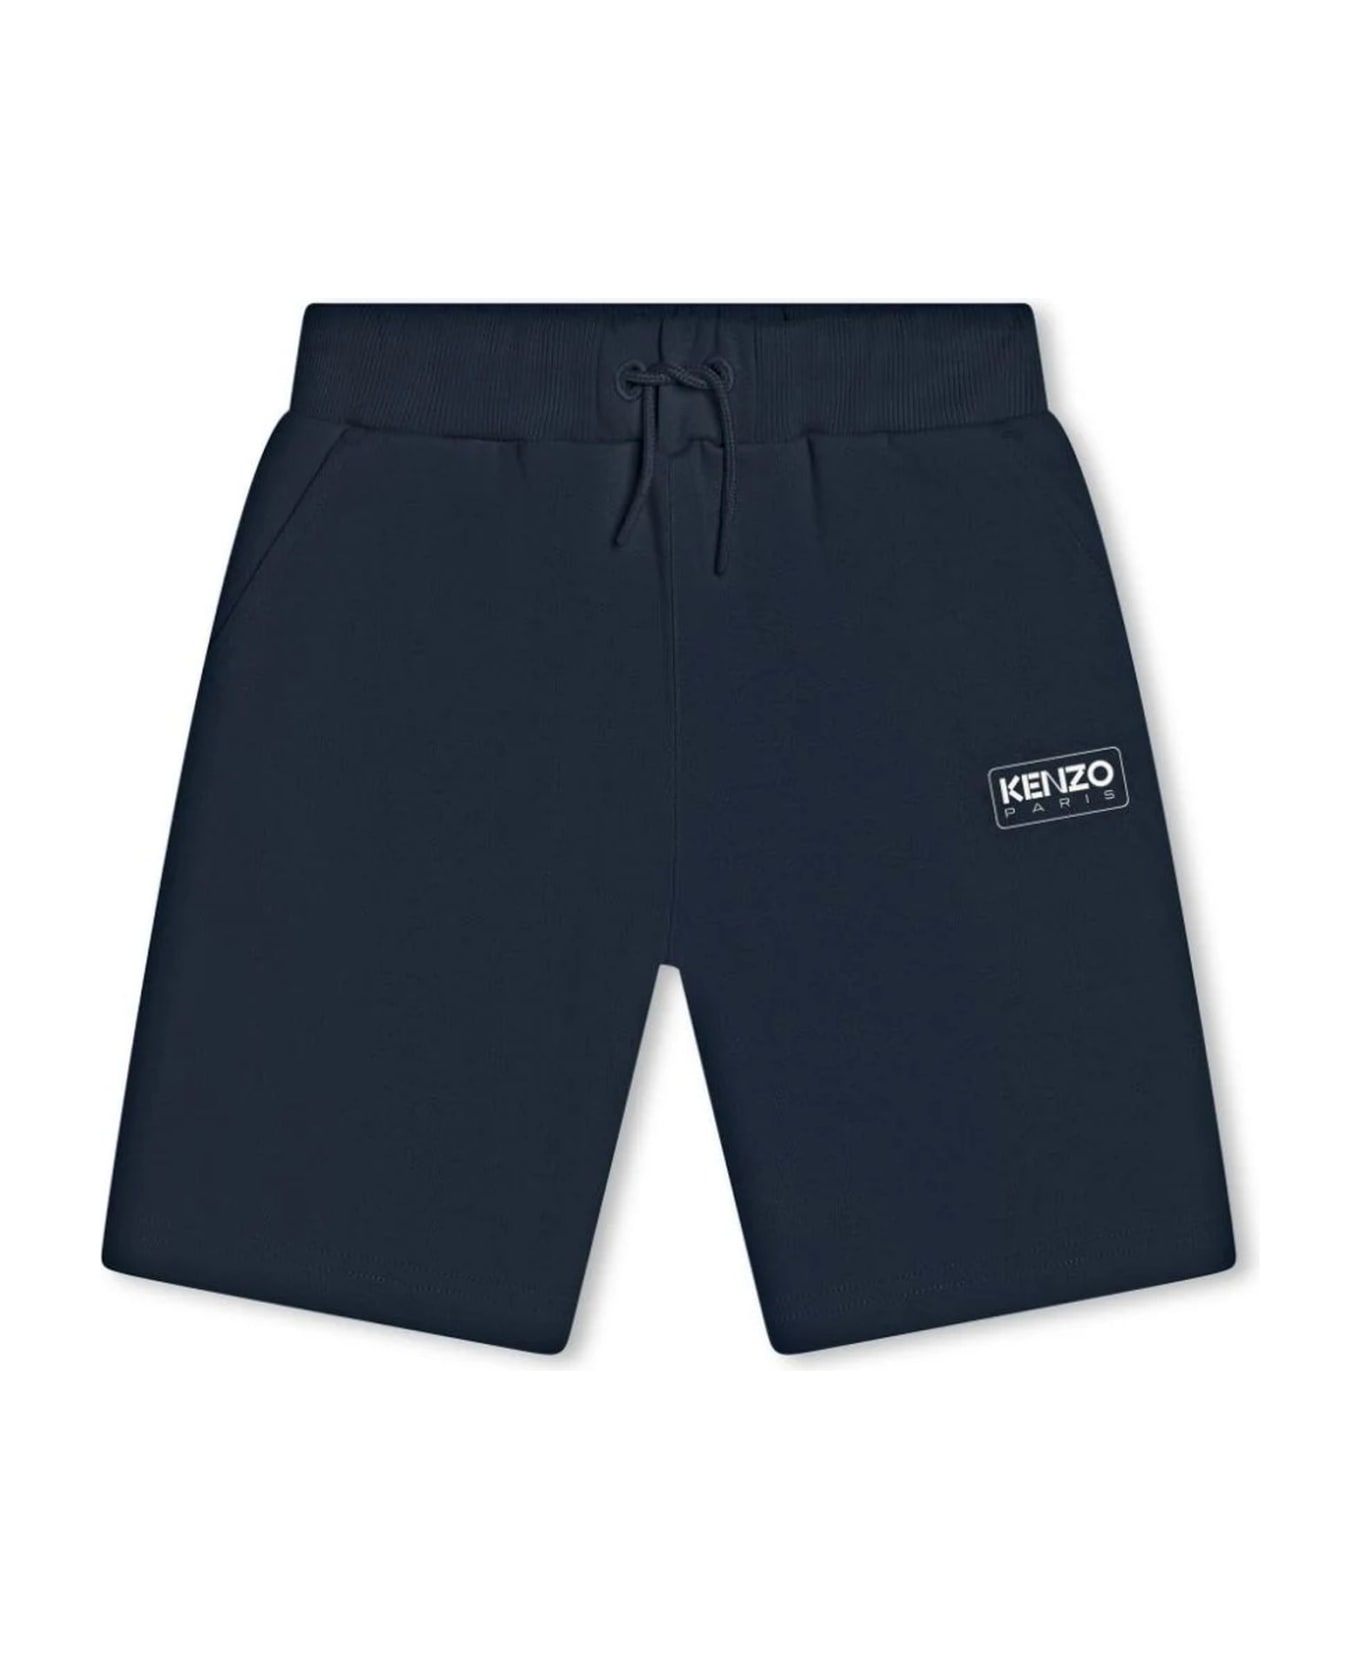 Kenzo Kids Shorts Blue - NAVY ボトムス